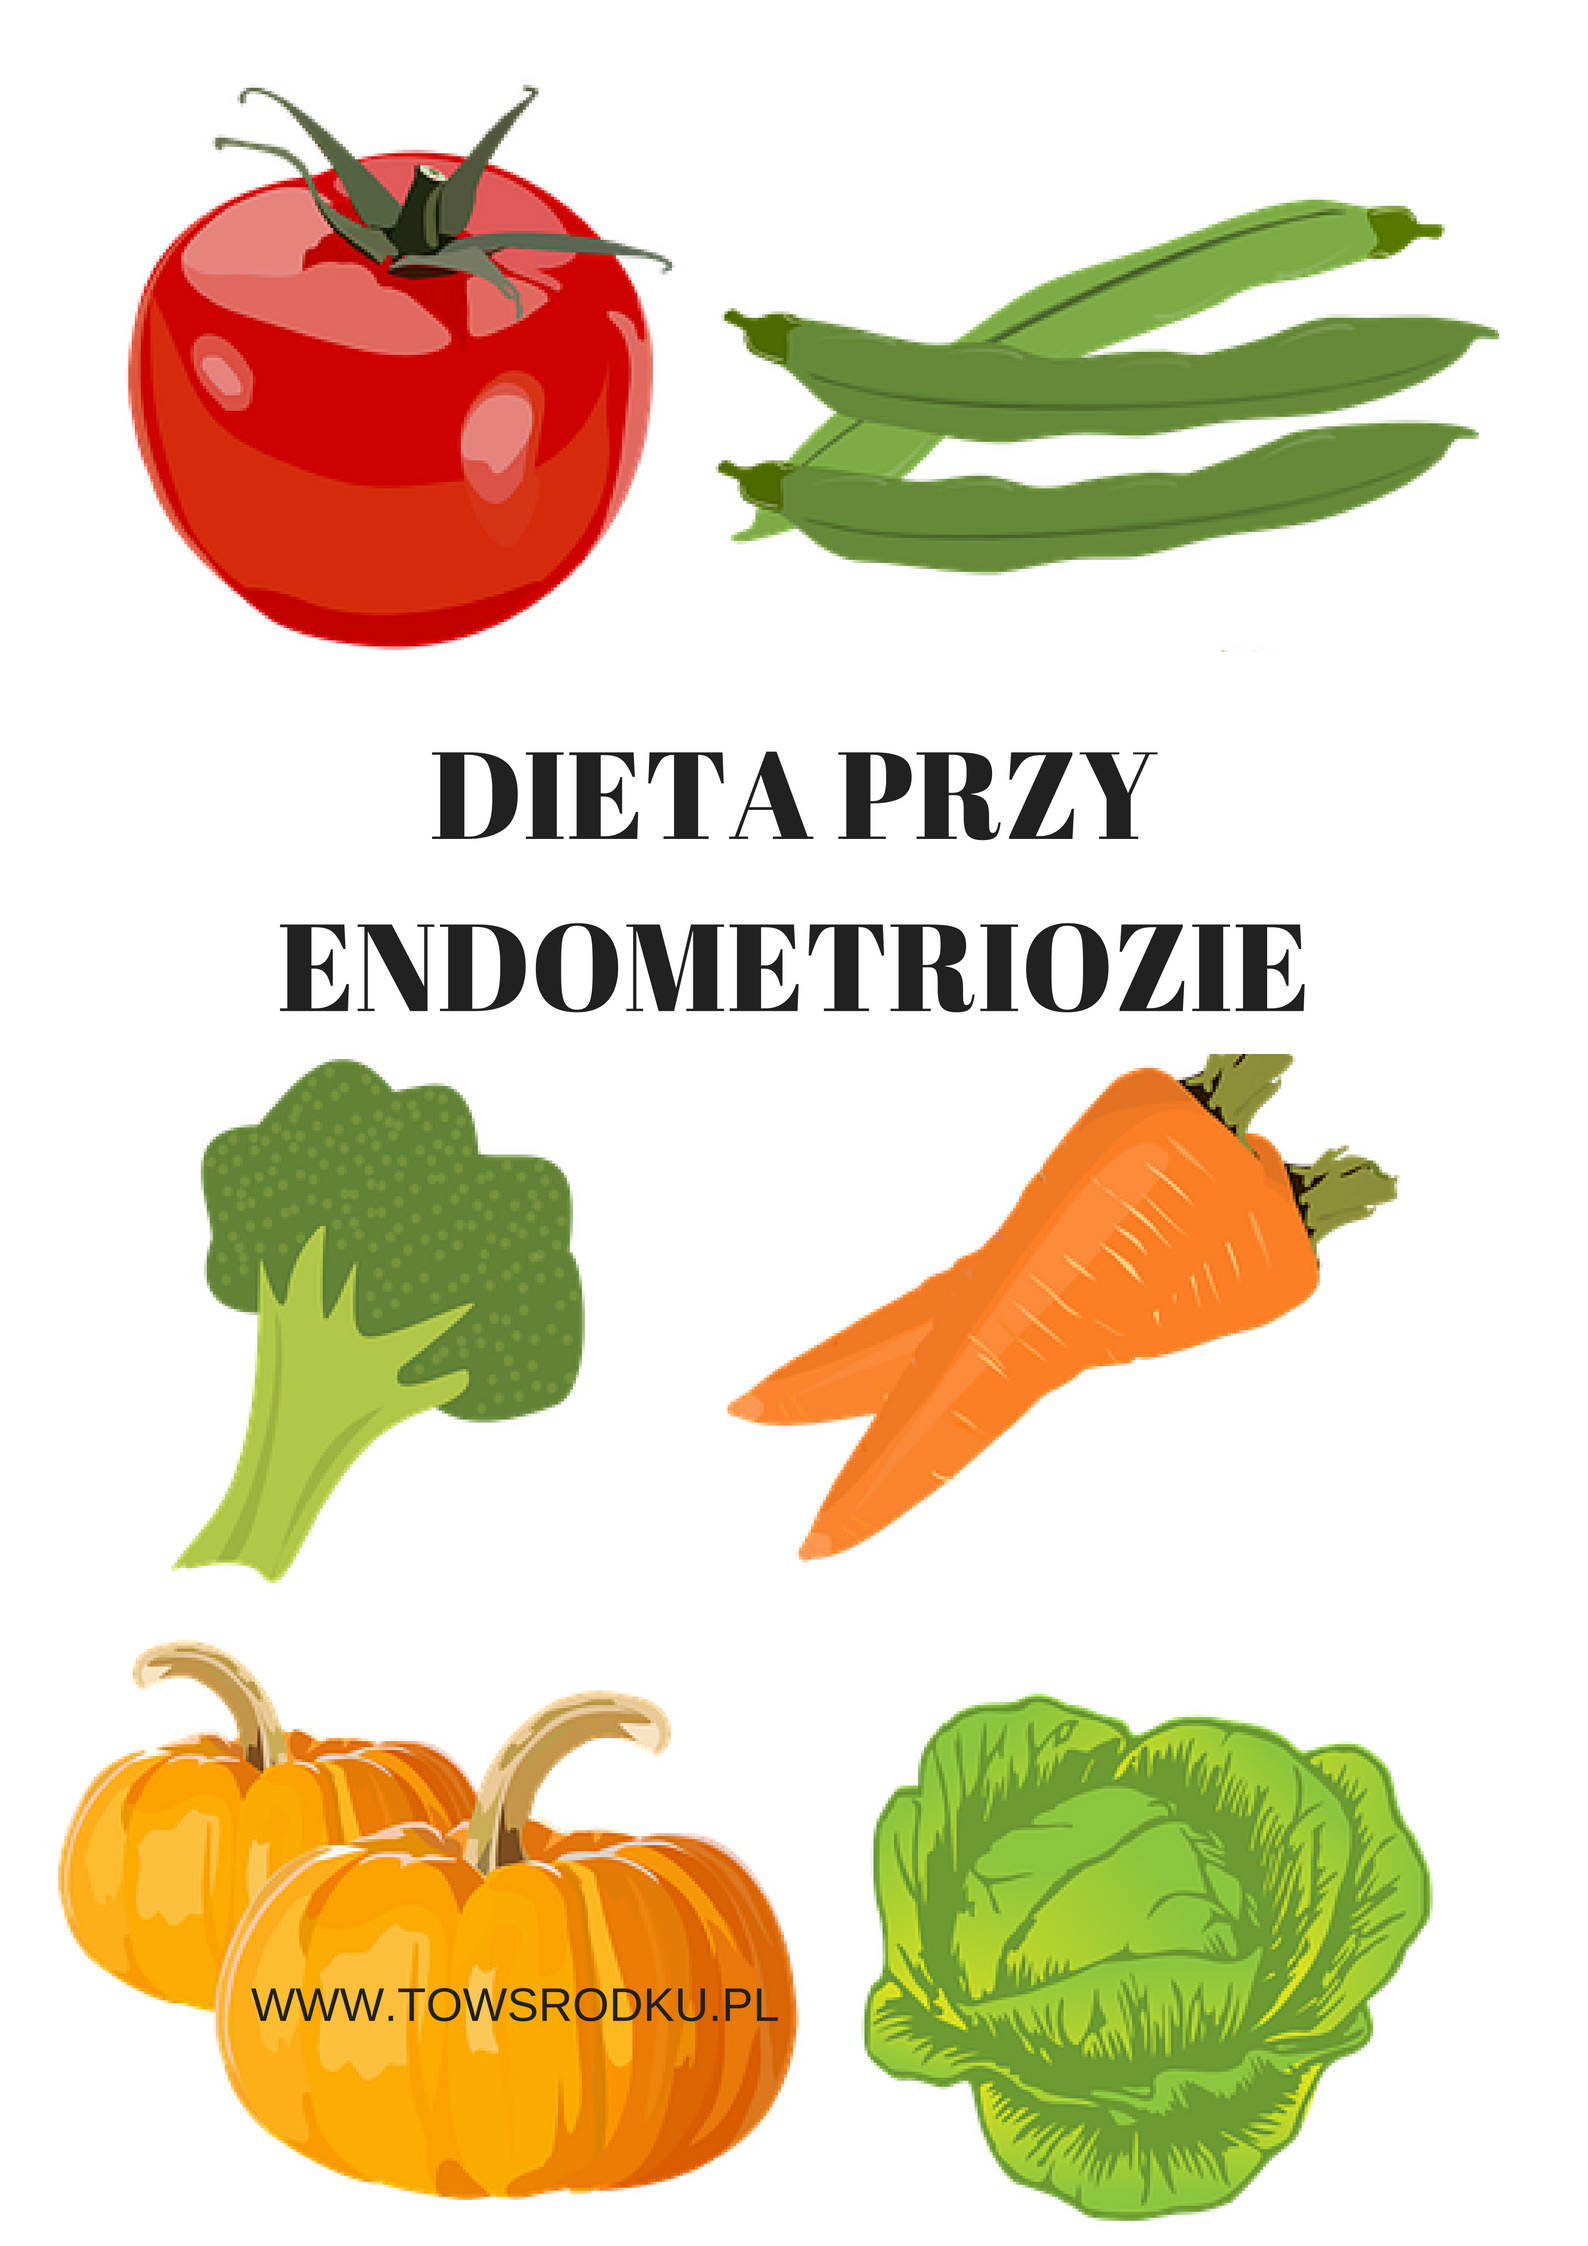 Dieta esentiala pentru endometrioza